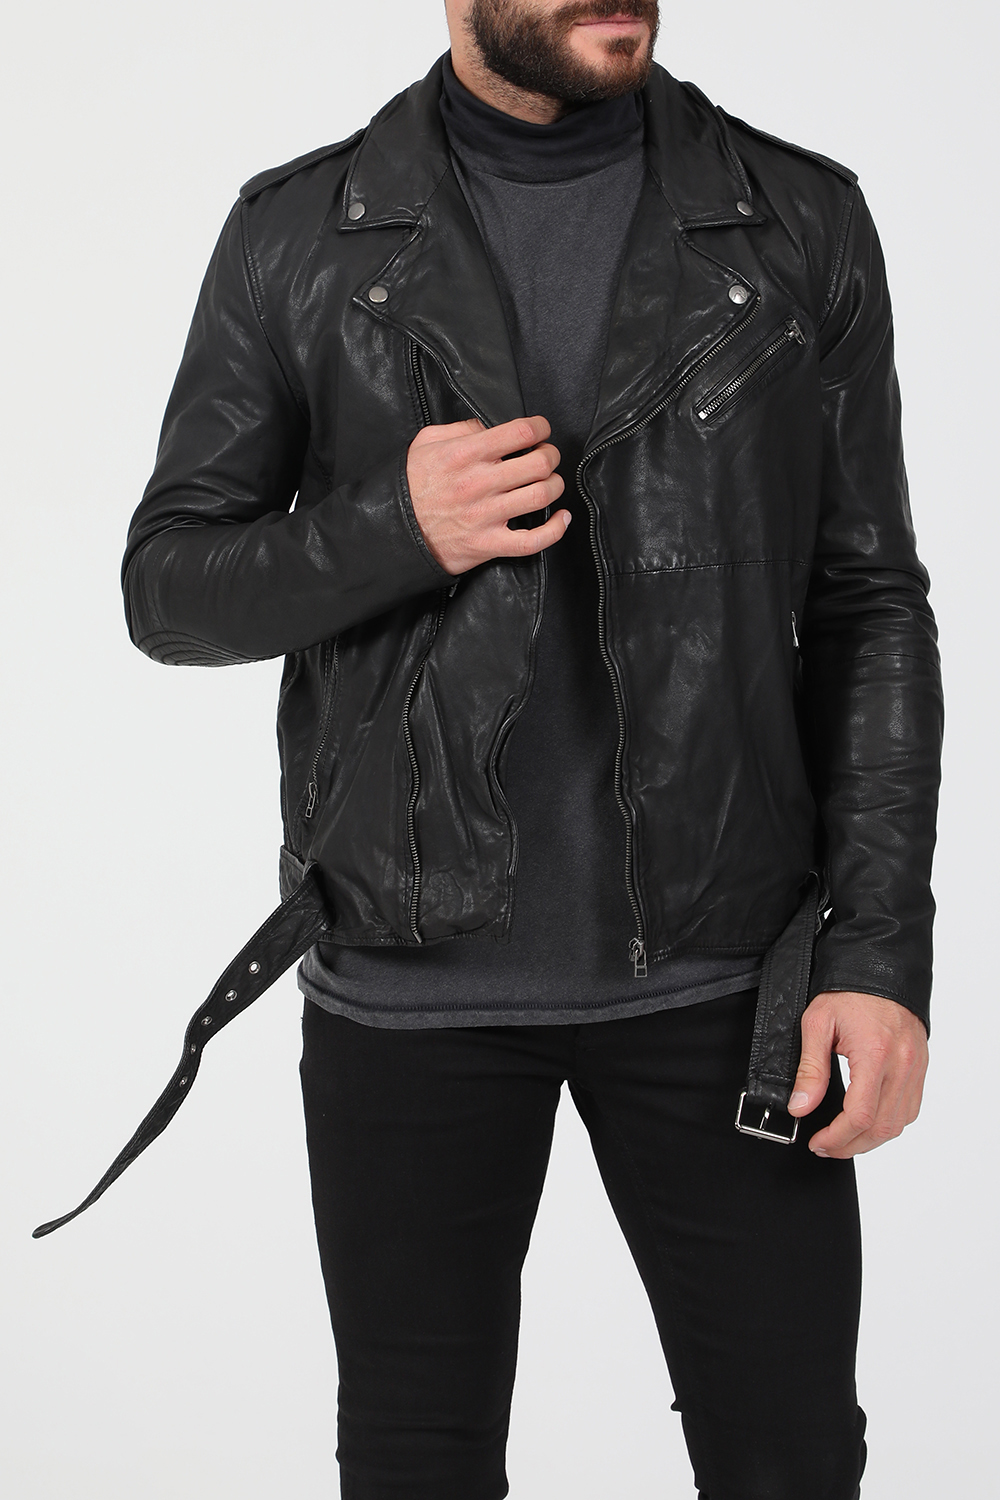 Ανδρικά/Ρούχα/Πανωφόρια/Τζάκετς GOOSECRAFT - Ανδρικό δερμάτινο jacket GOOSECRAFT GC MASON BIKER μαύρο